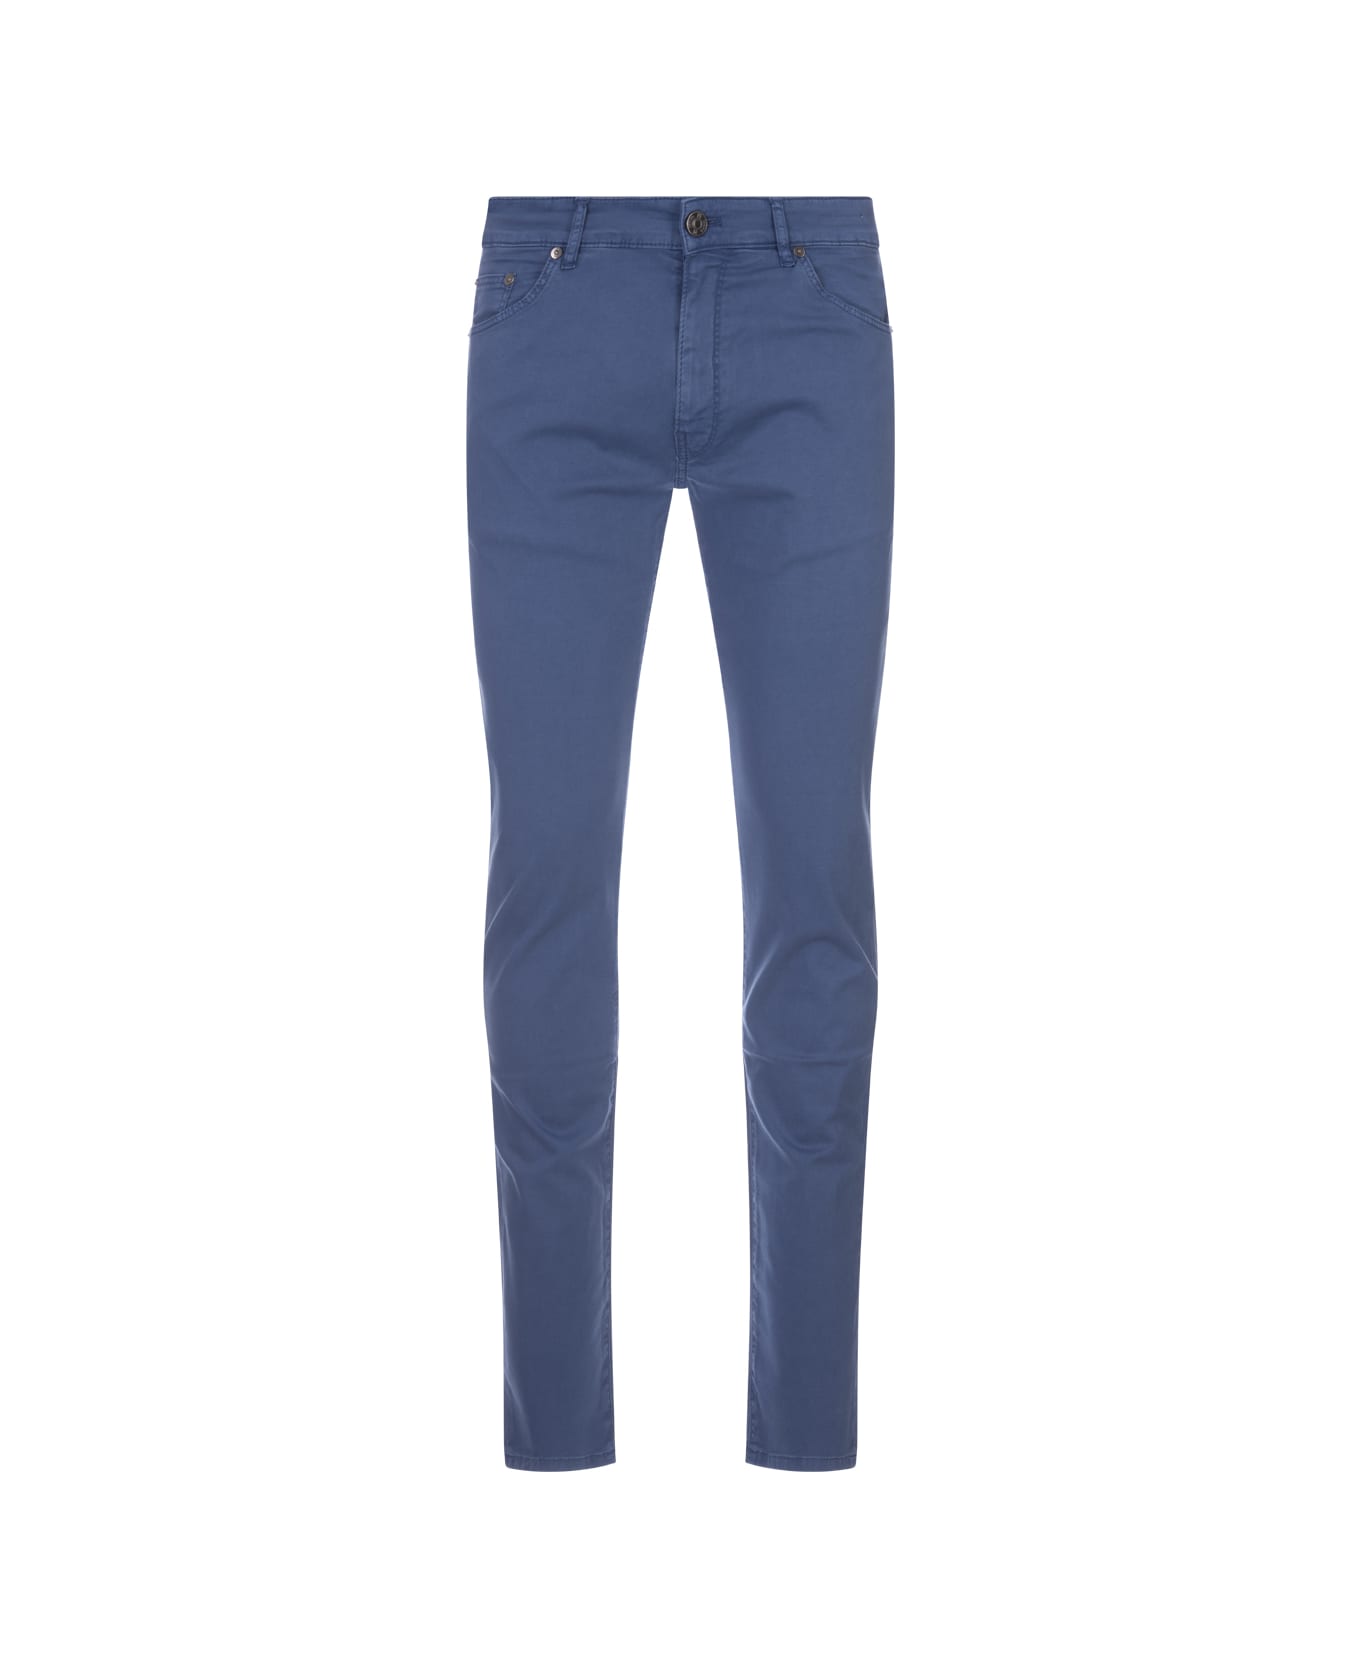 PT Torino Swing Jeans In Blue Stretch Denim - Blue